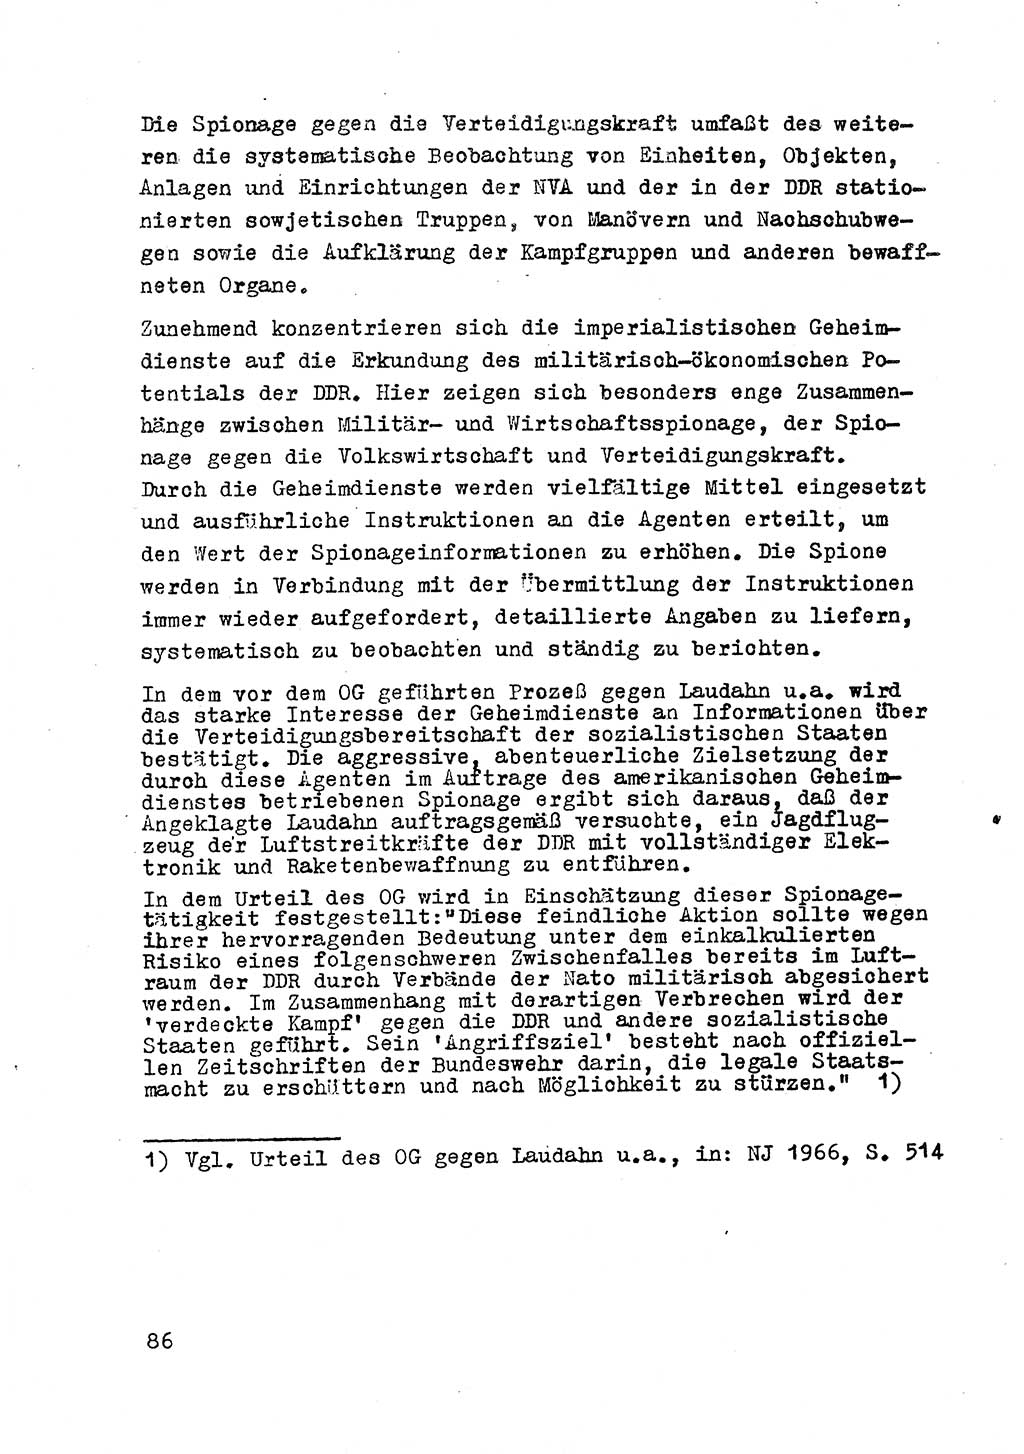 Strafrecht der DDR (Deutsche Demokratische Republik), Besonderer Teil, Lehrmaterial, Heft 2 1969, Seite 86 (Strafr. DDR BT Lehrmat. H. 2 1969, S. 86)